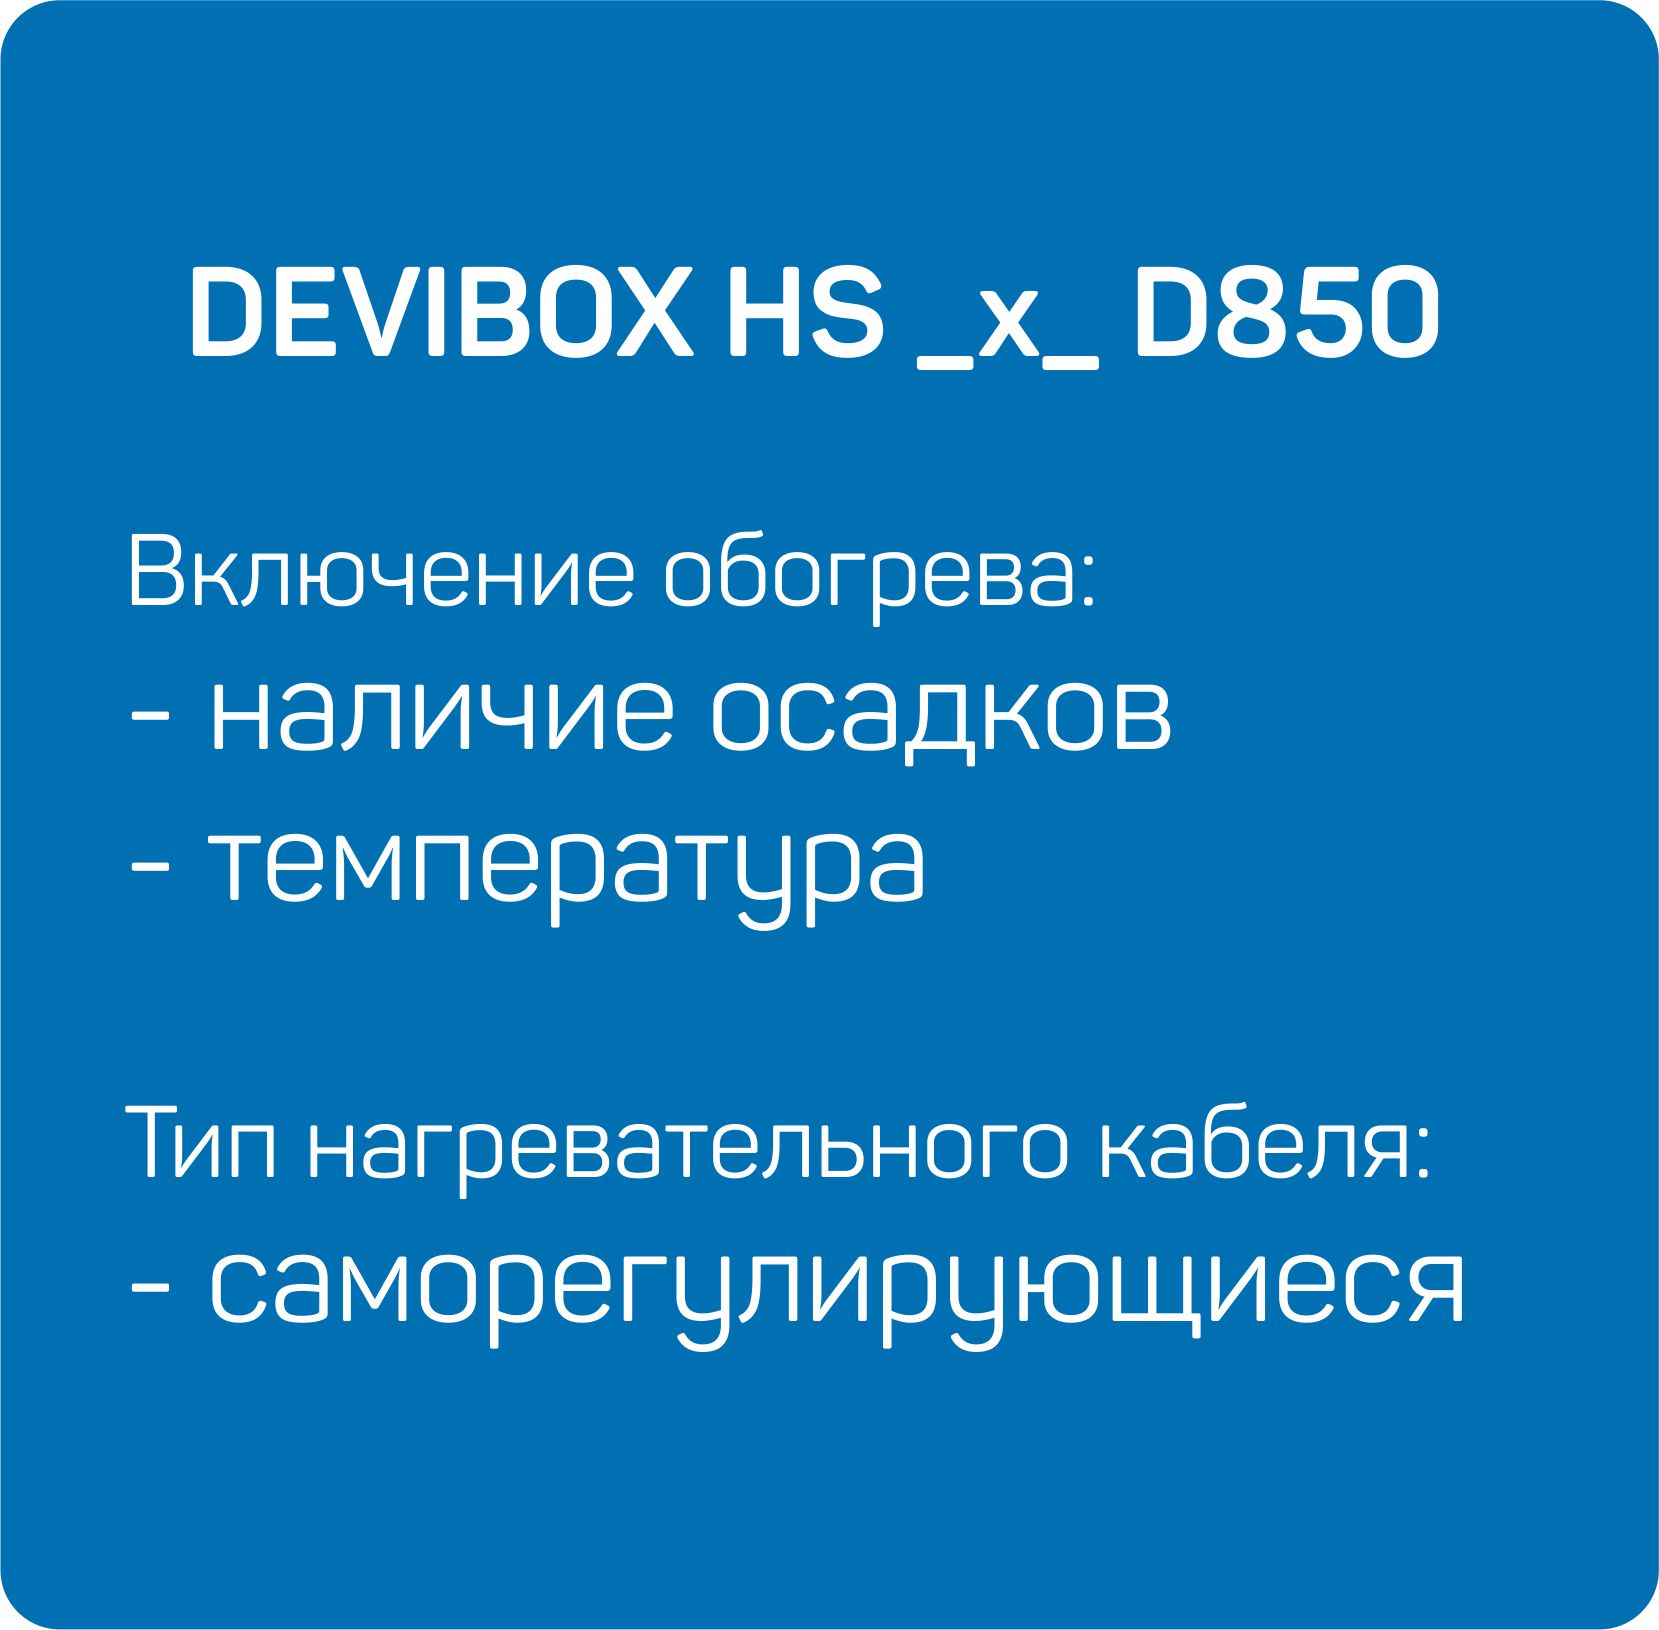 HS _x_ D850